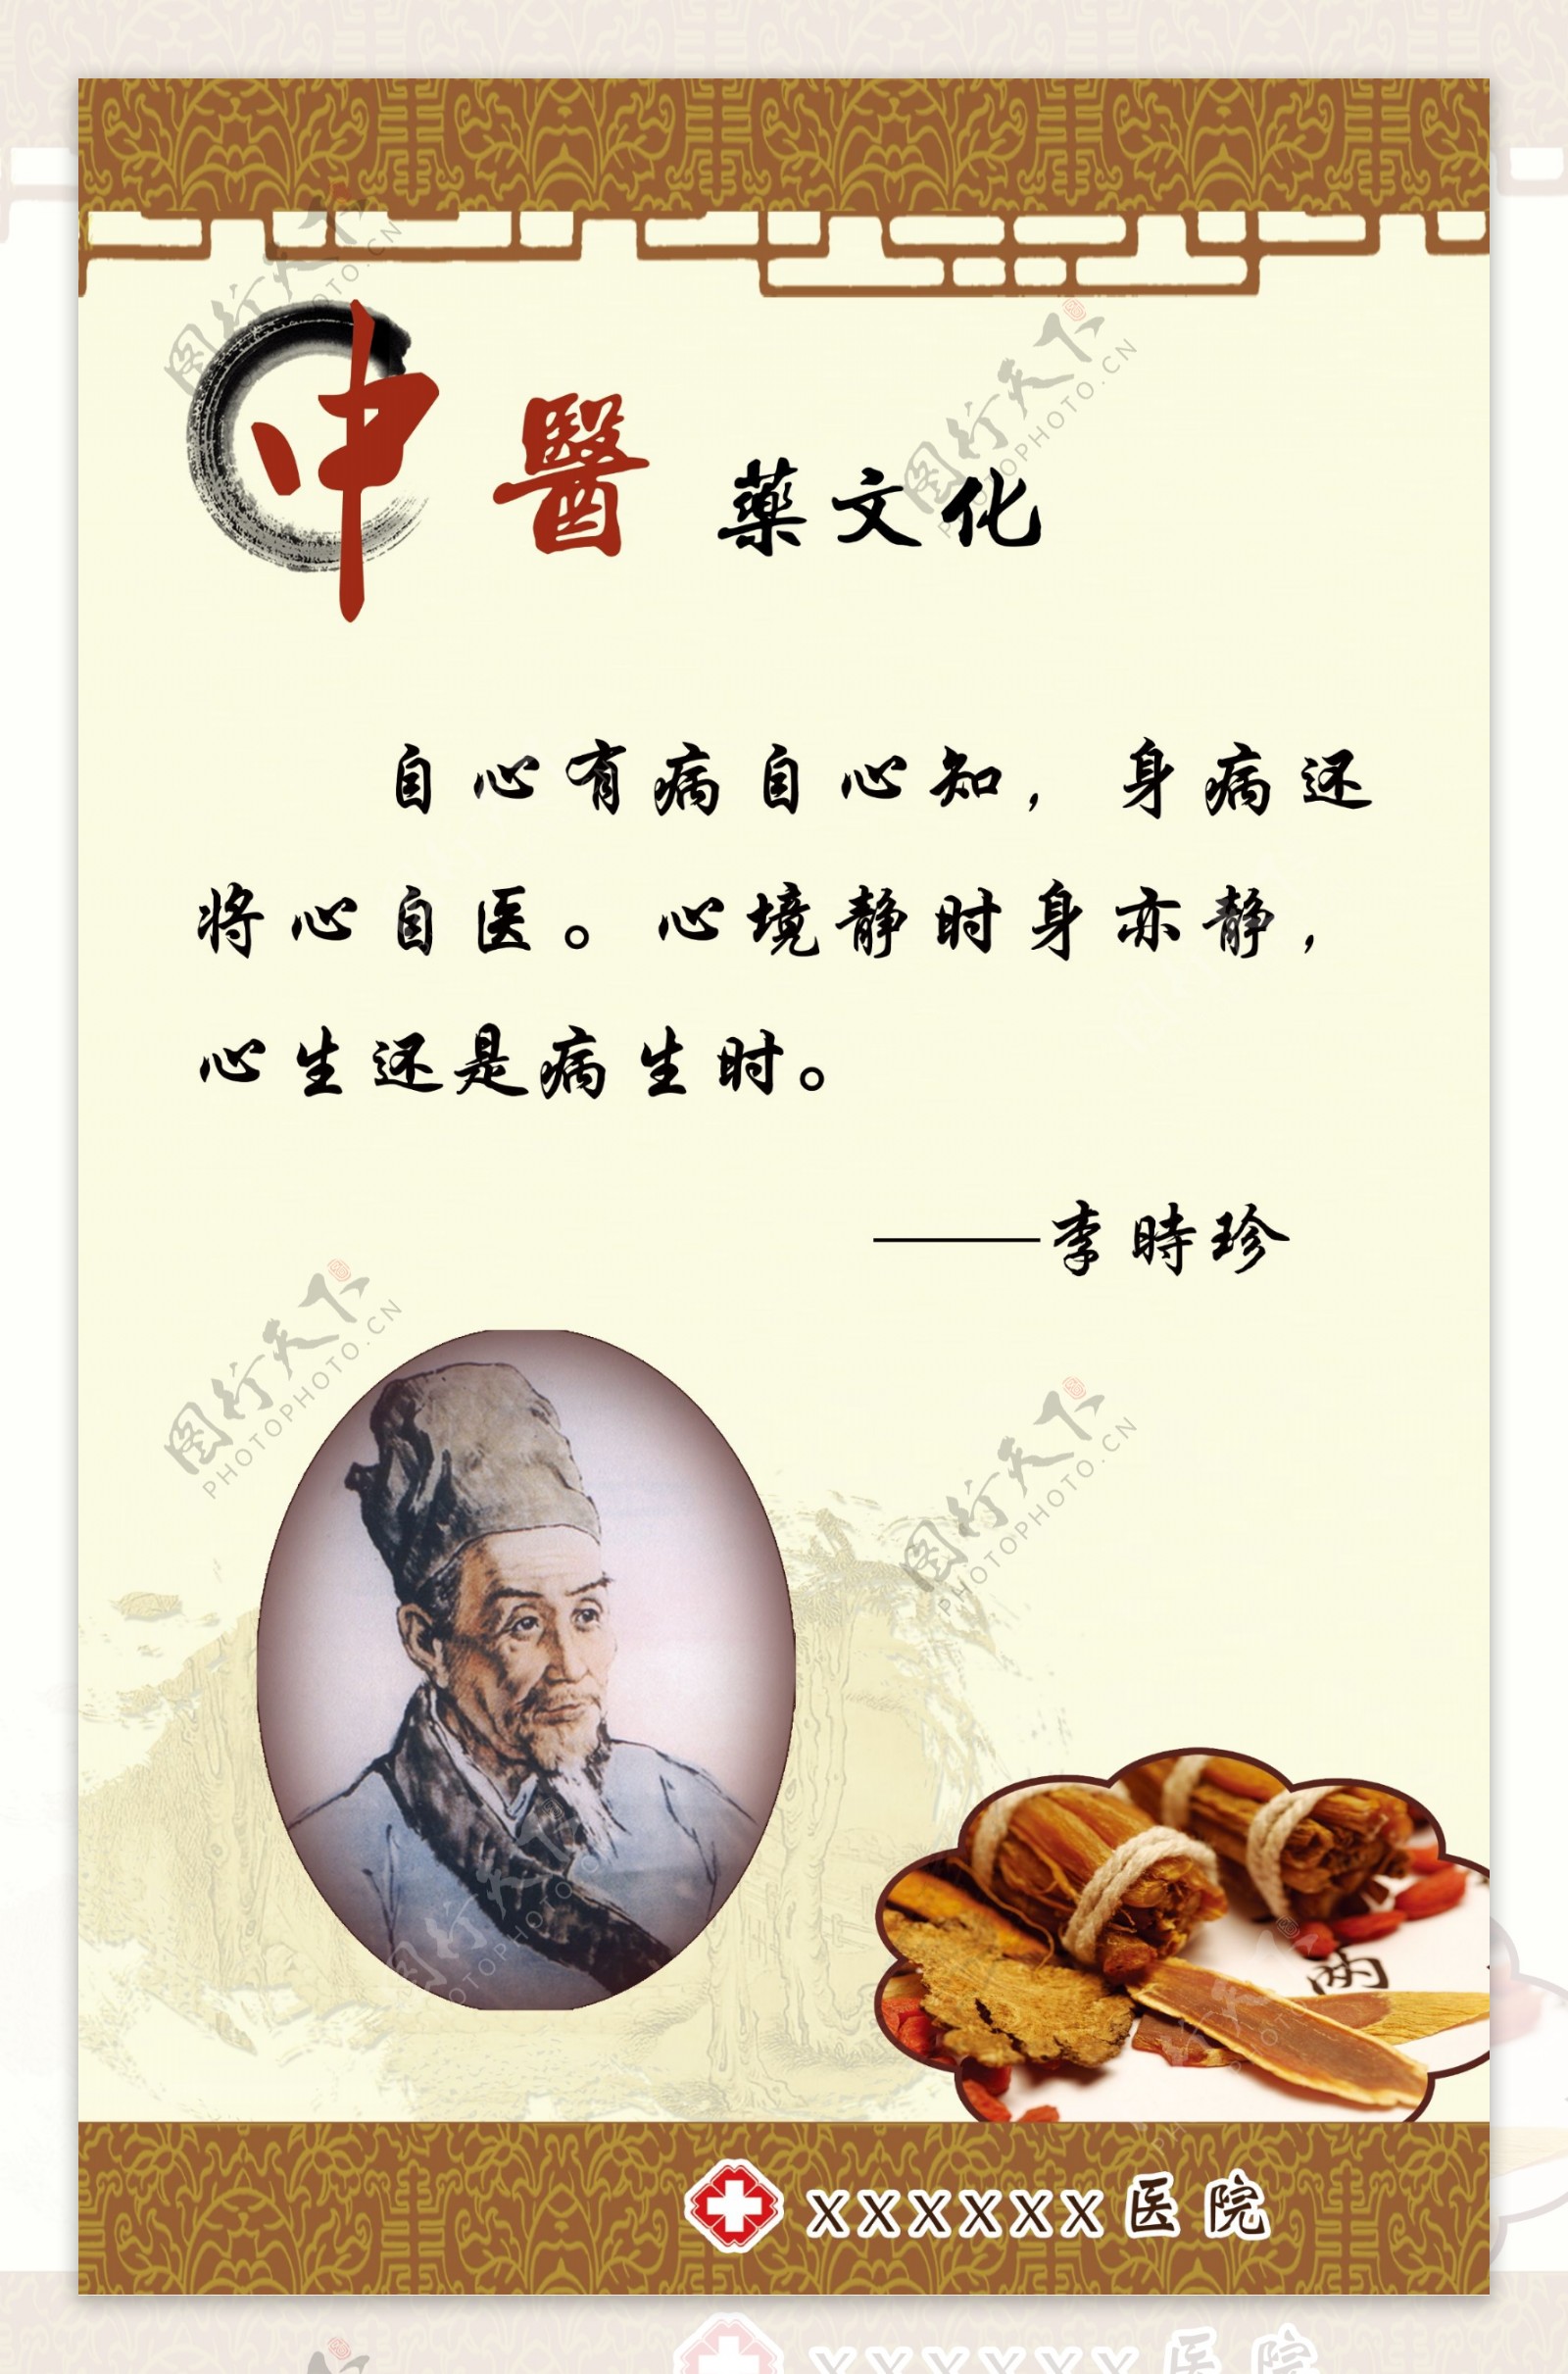 中医文化李时珍图片